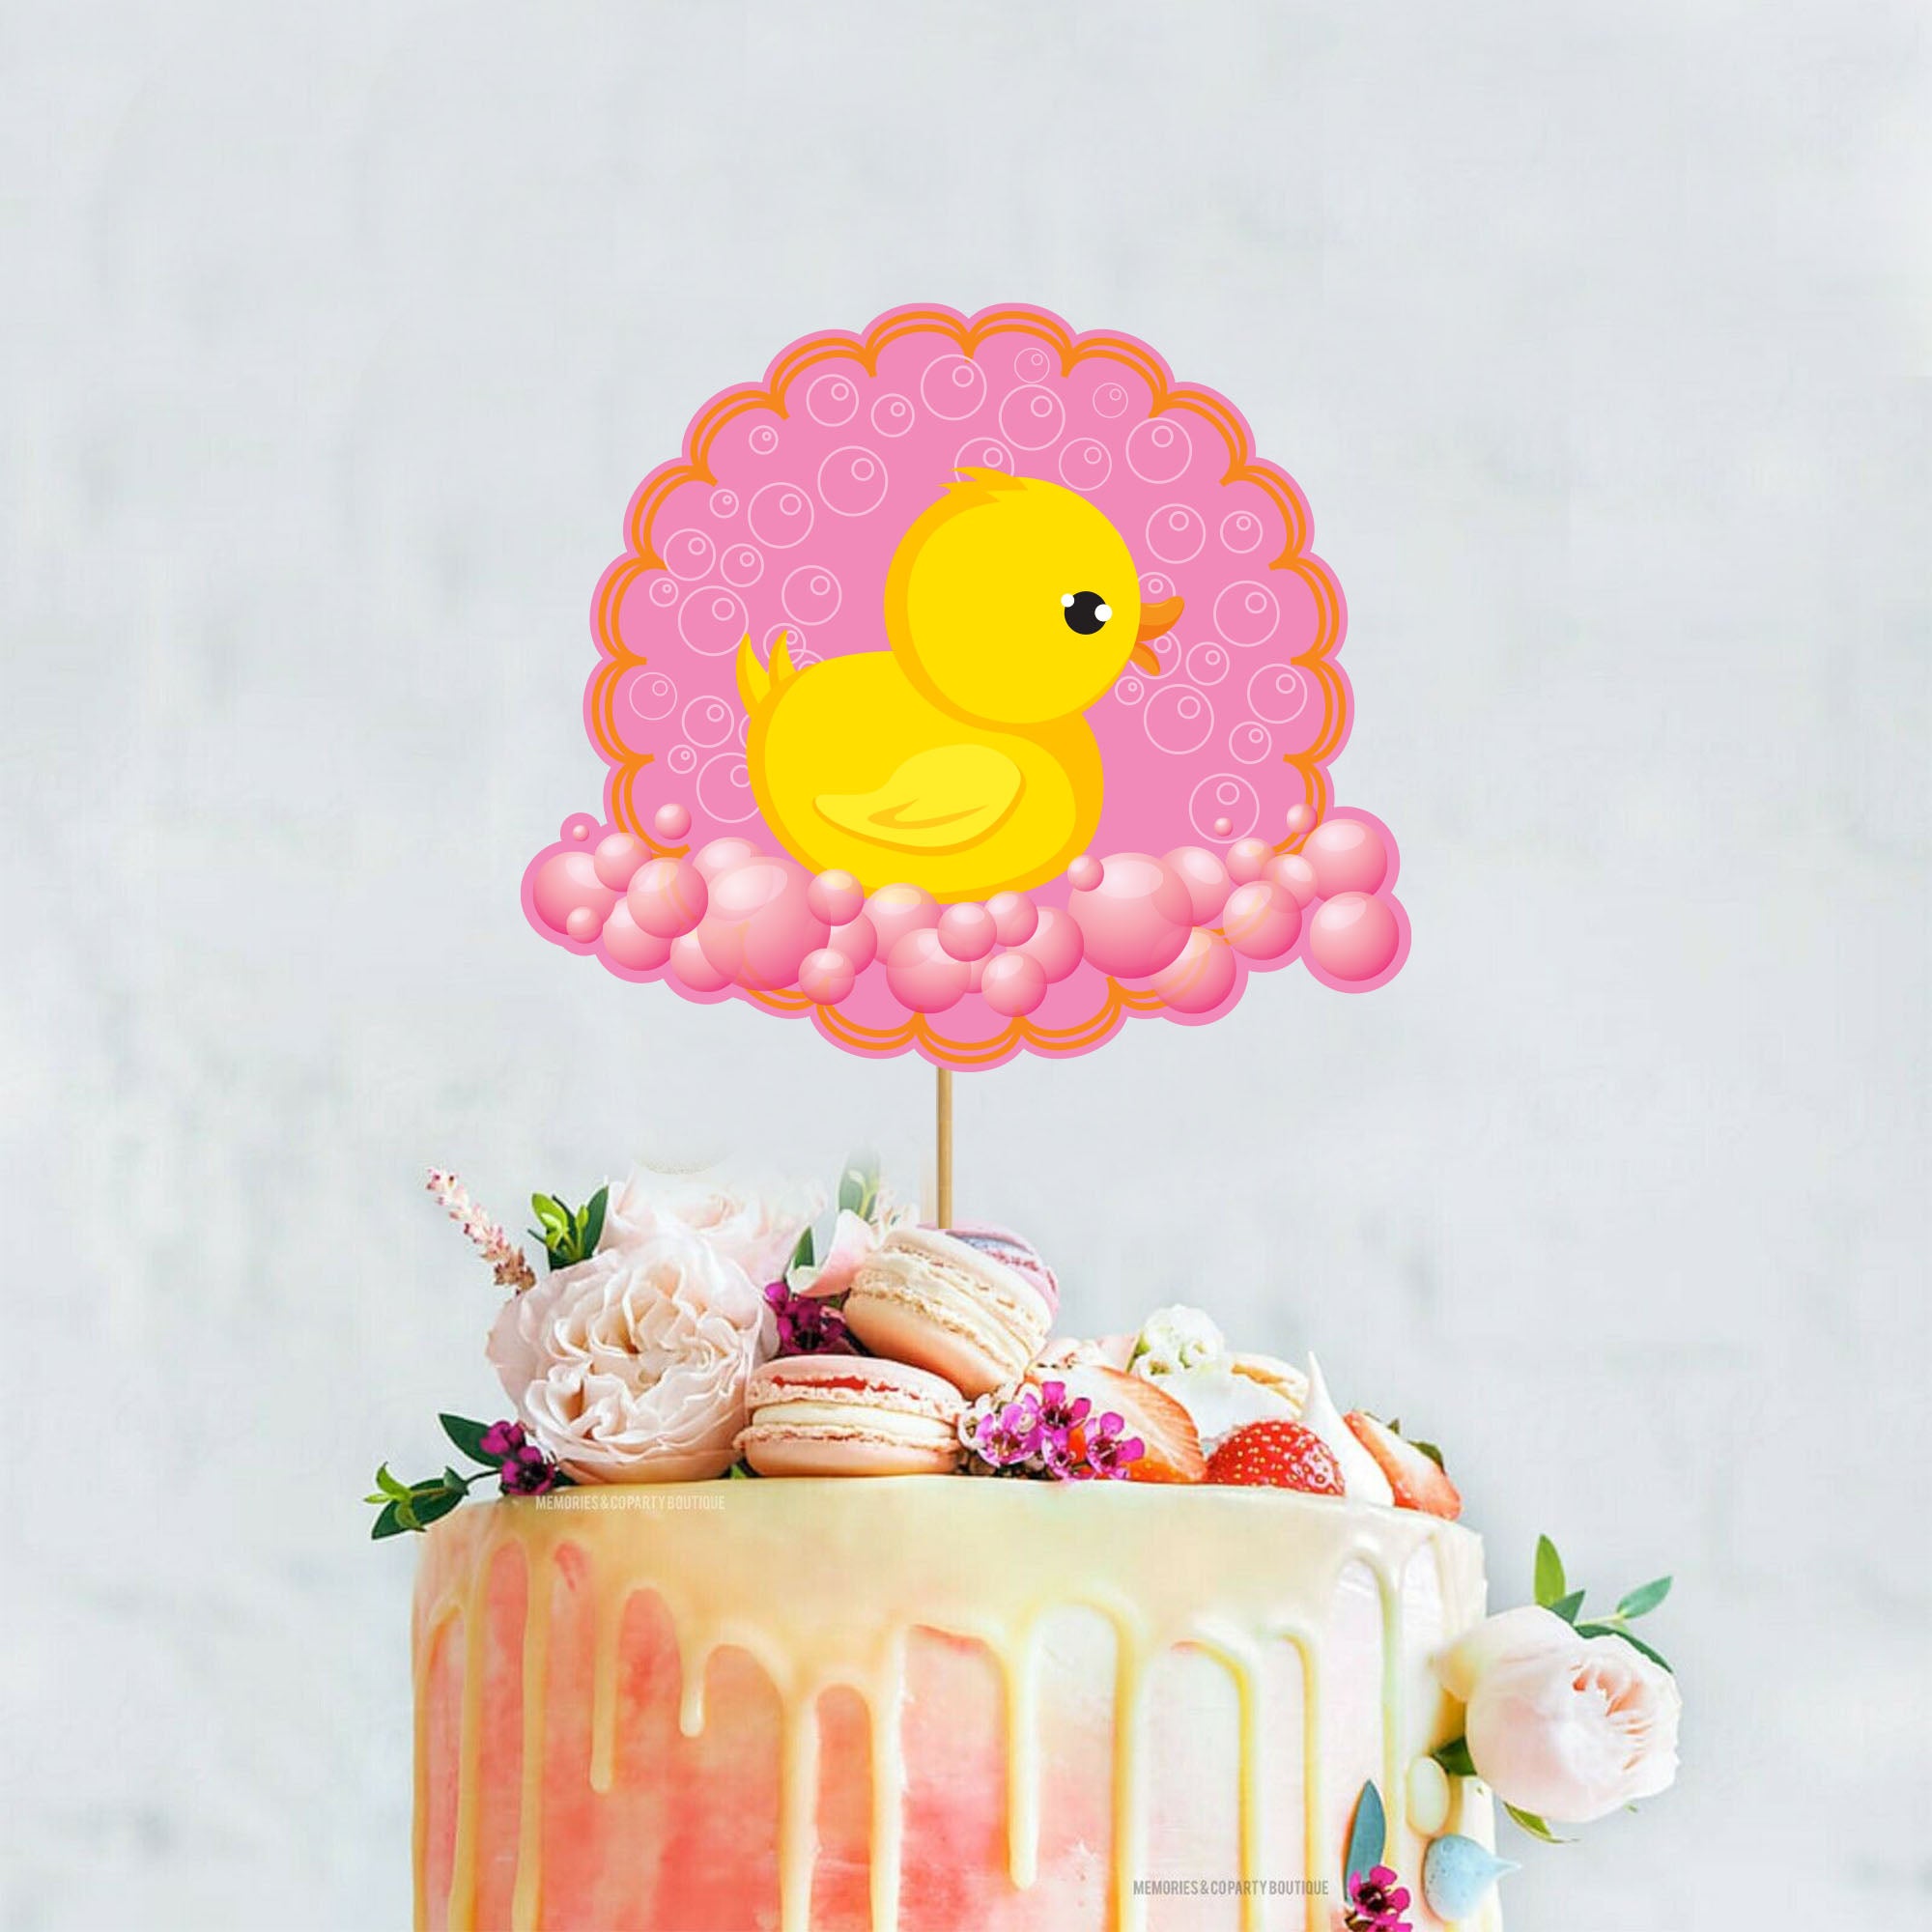 Rubber ducky baby shower cake Recipe by grace_windu - Cookpad